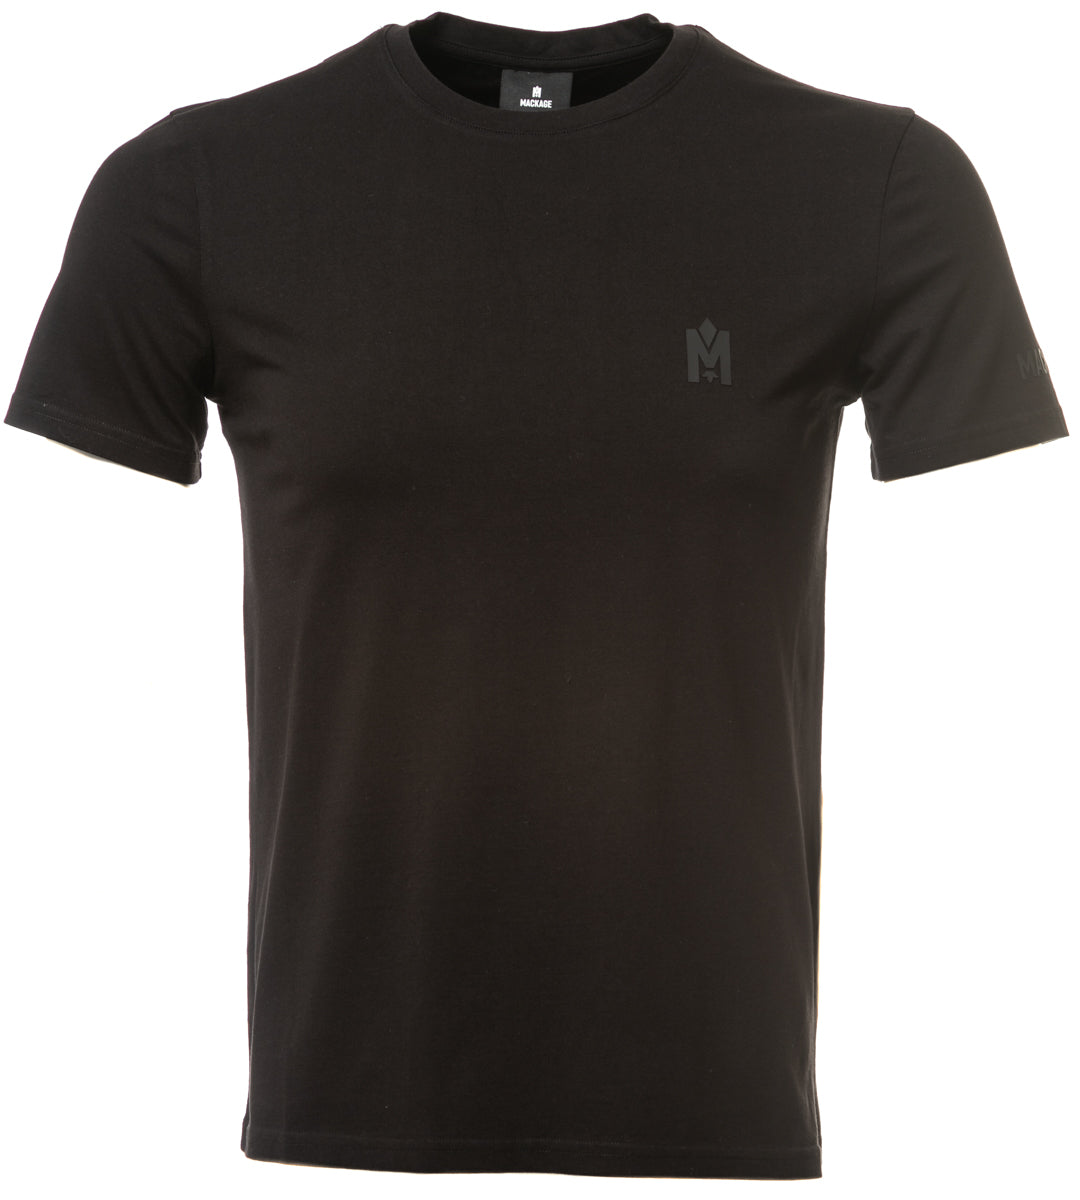 Mackage Ace-Z T Shirt in Black